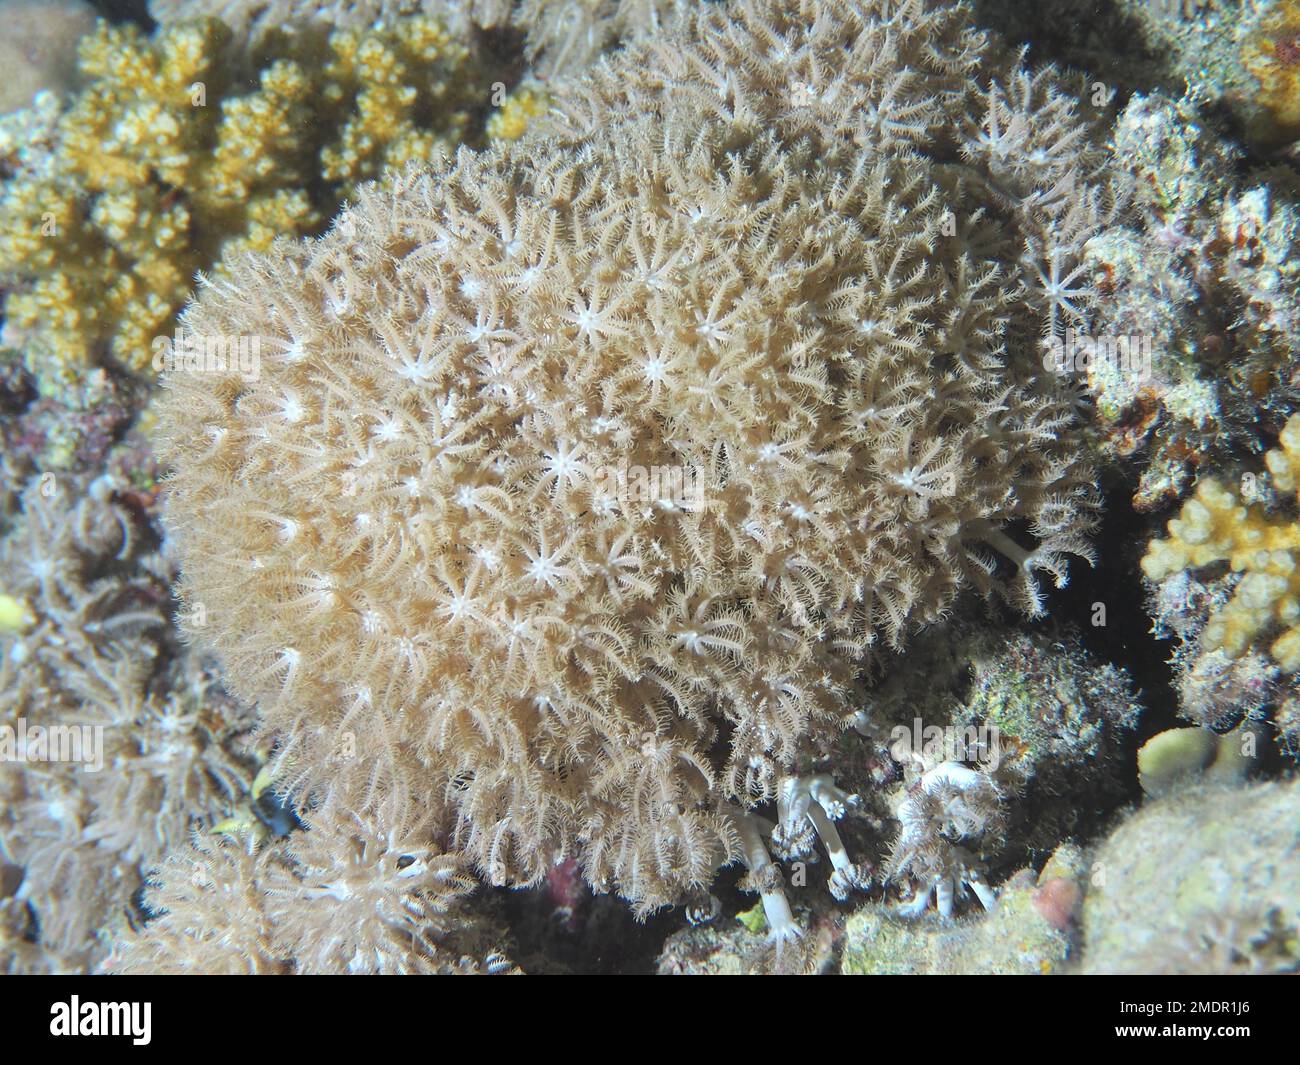 Pulsating xenid (Heteroxenia fuscescens), Elphinstone Reef dive site ...